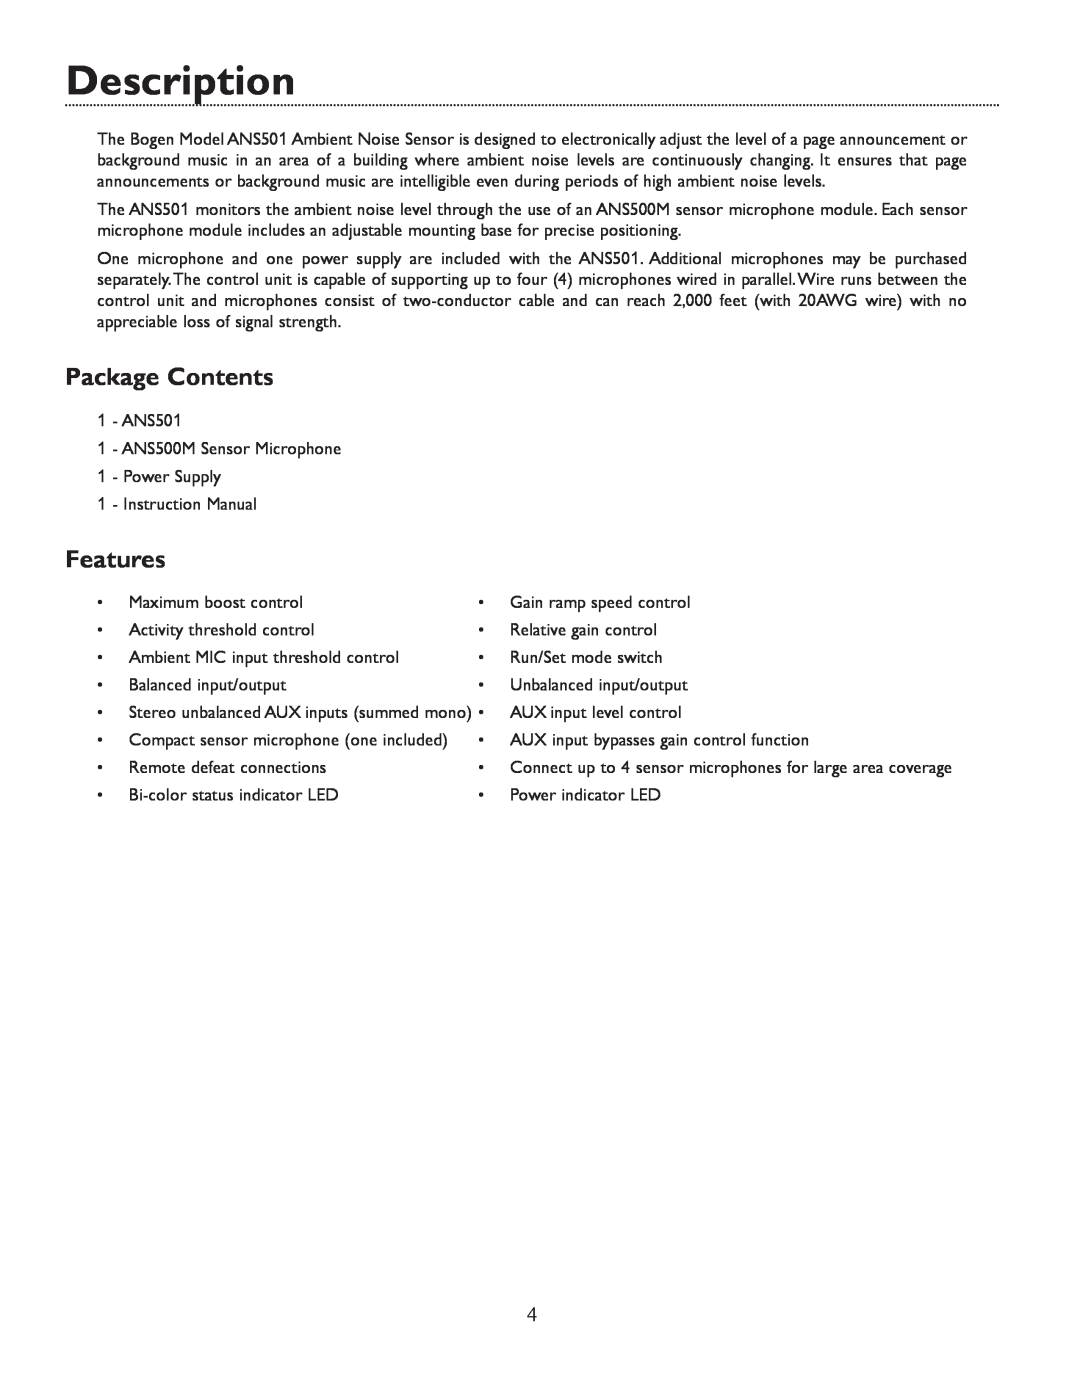 Bogen ANS501 specifications Description, Package Contents, Features 